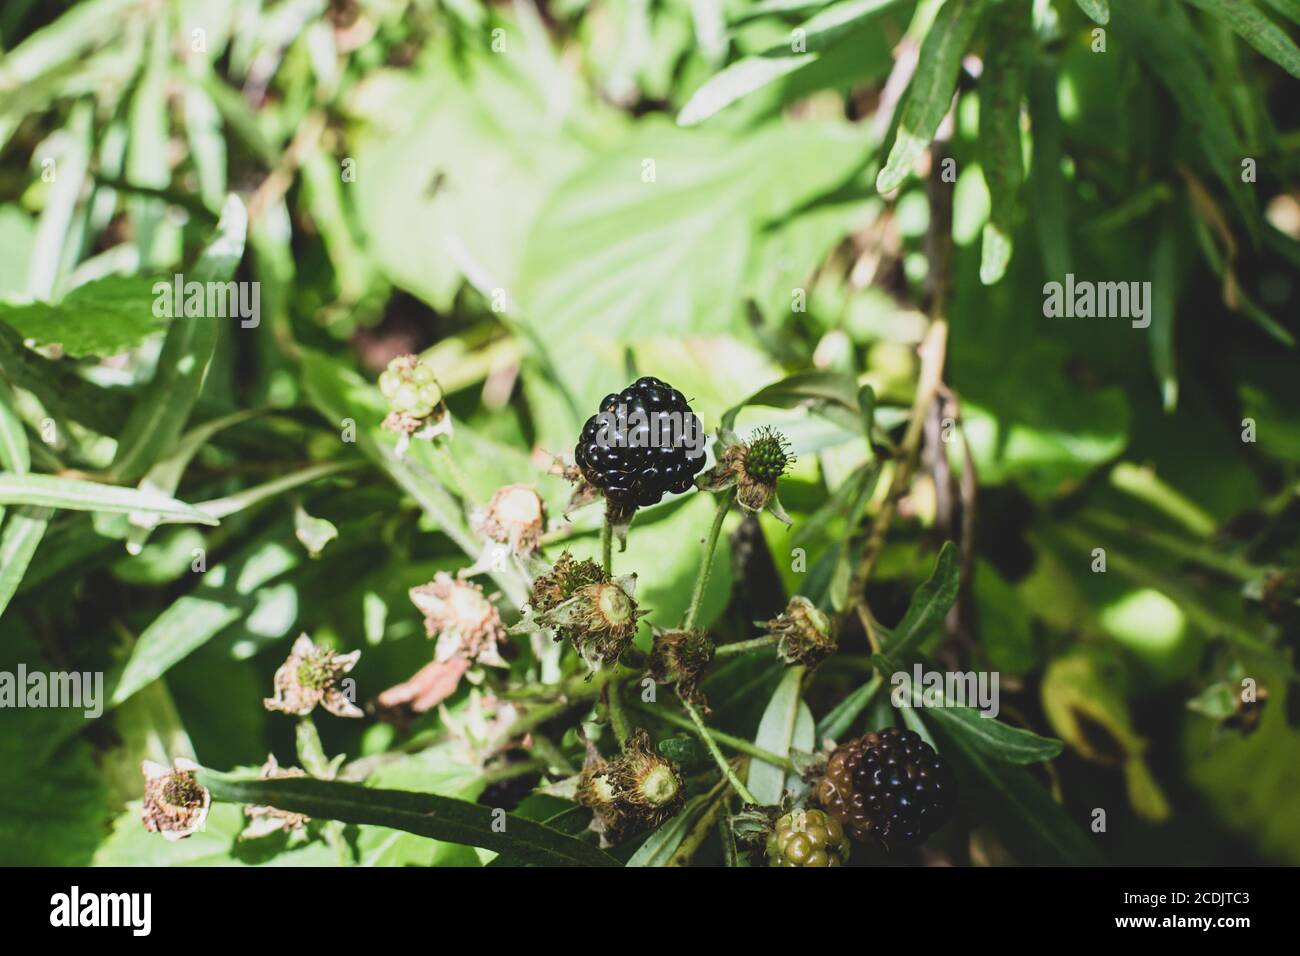 Wild bramble, blackberry grow in Sokolniki park, Moscow Stock Photo